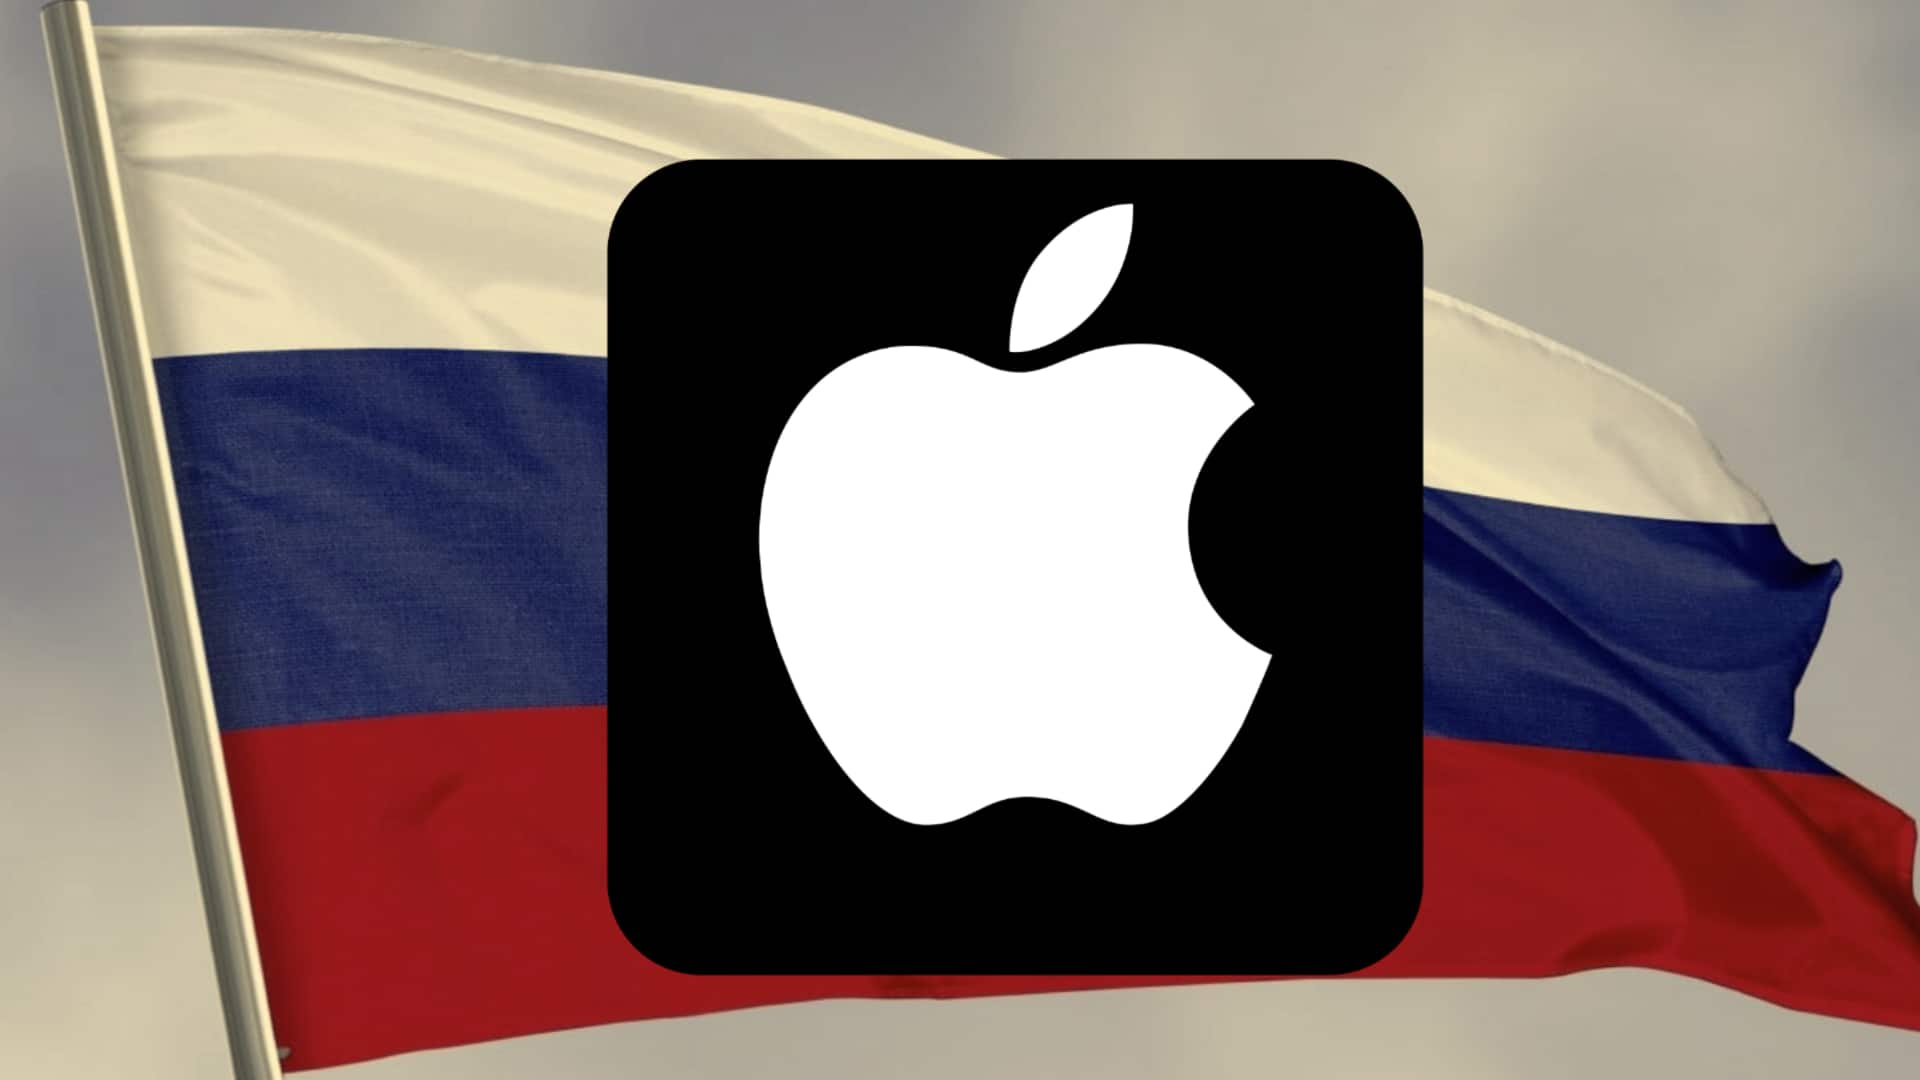 रूस ने ऐपल से वसूला 100 करोड़ रुपये से अधिक का जुर्माना, लगे थे ये आरोप